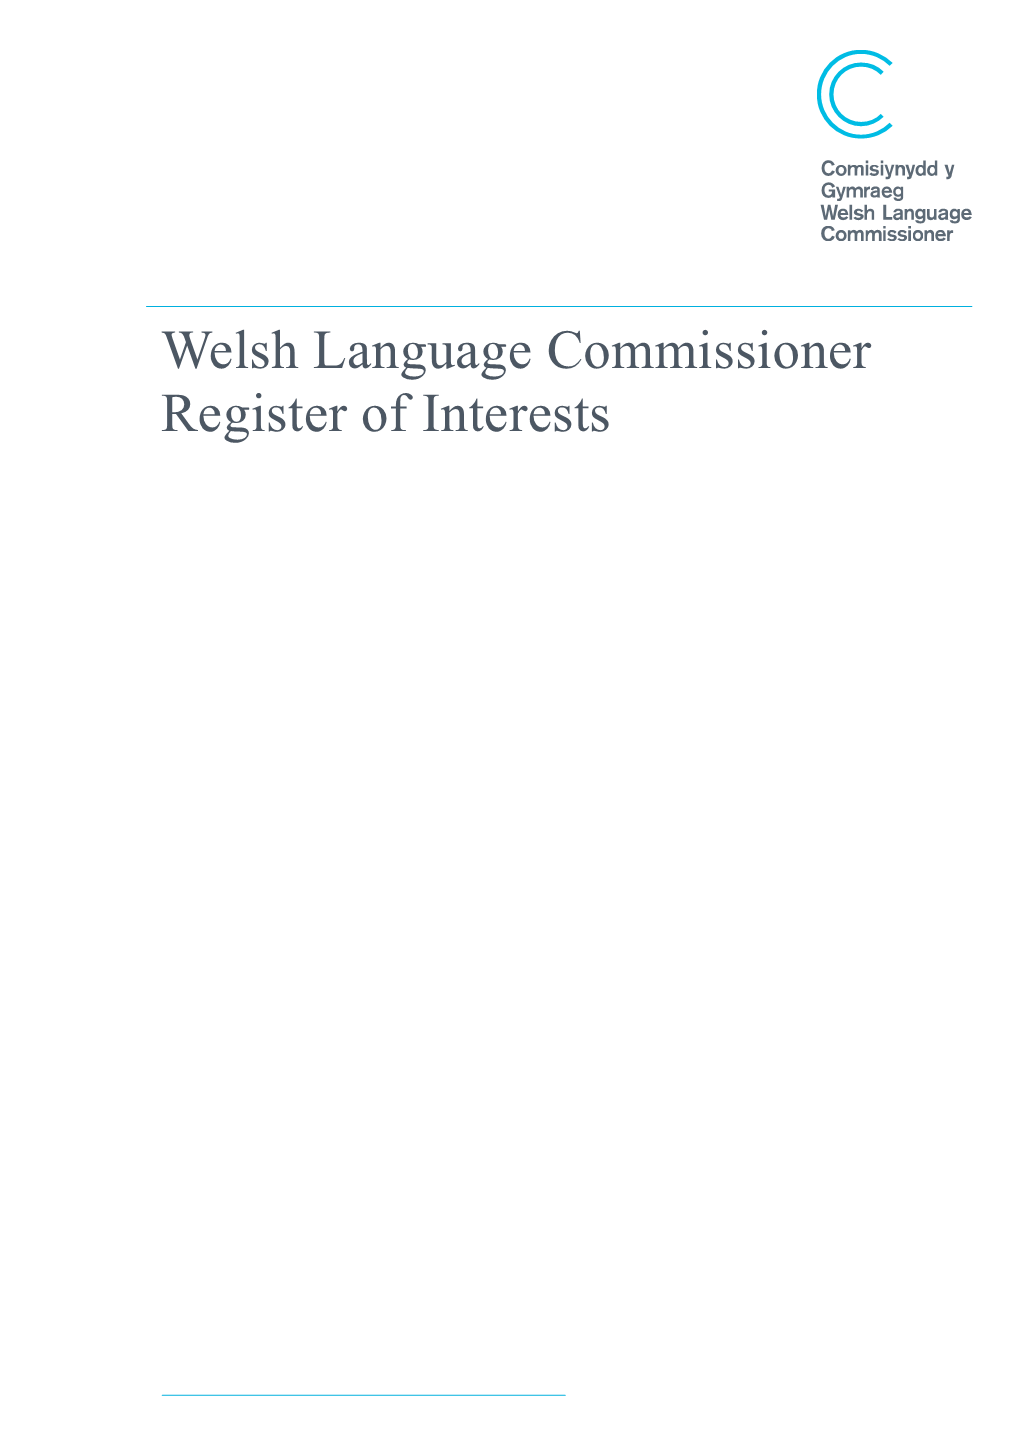 Welsh Language Commissioner Register of Interests